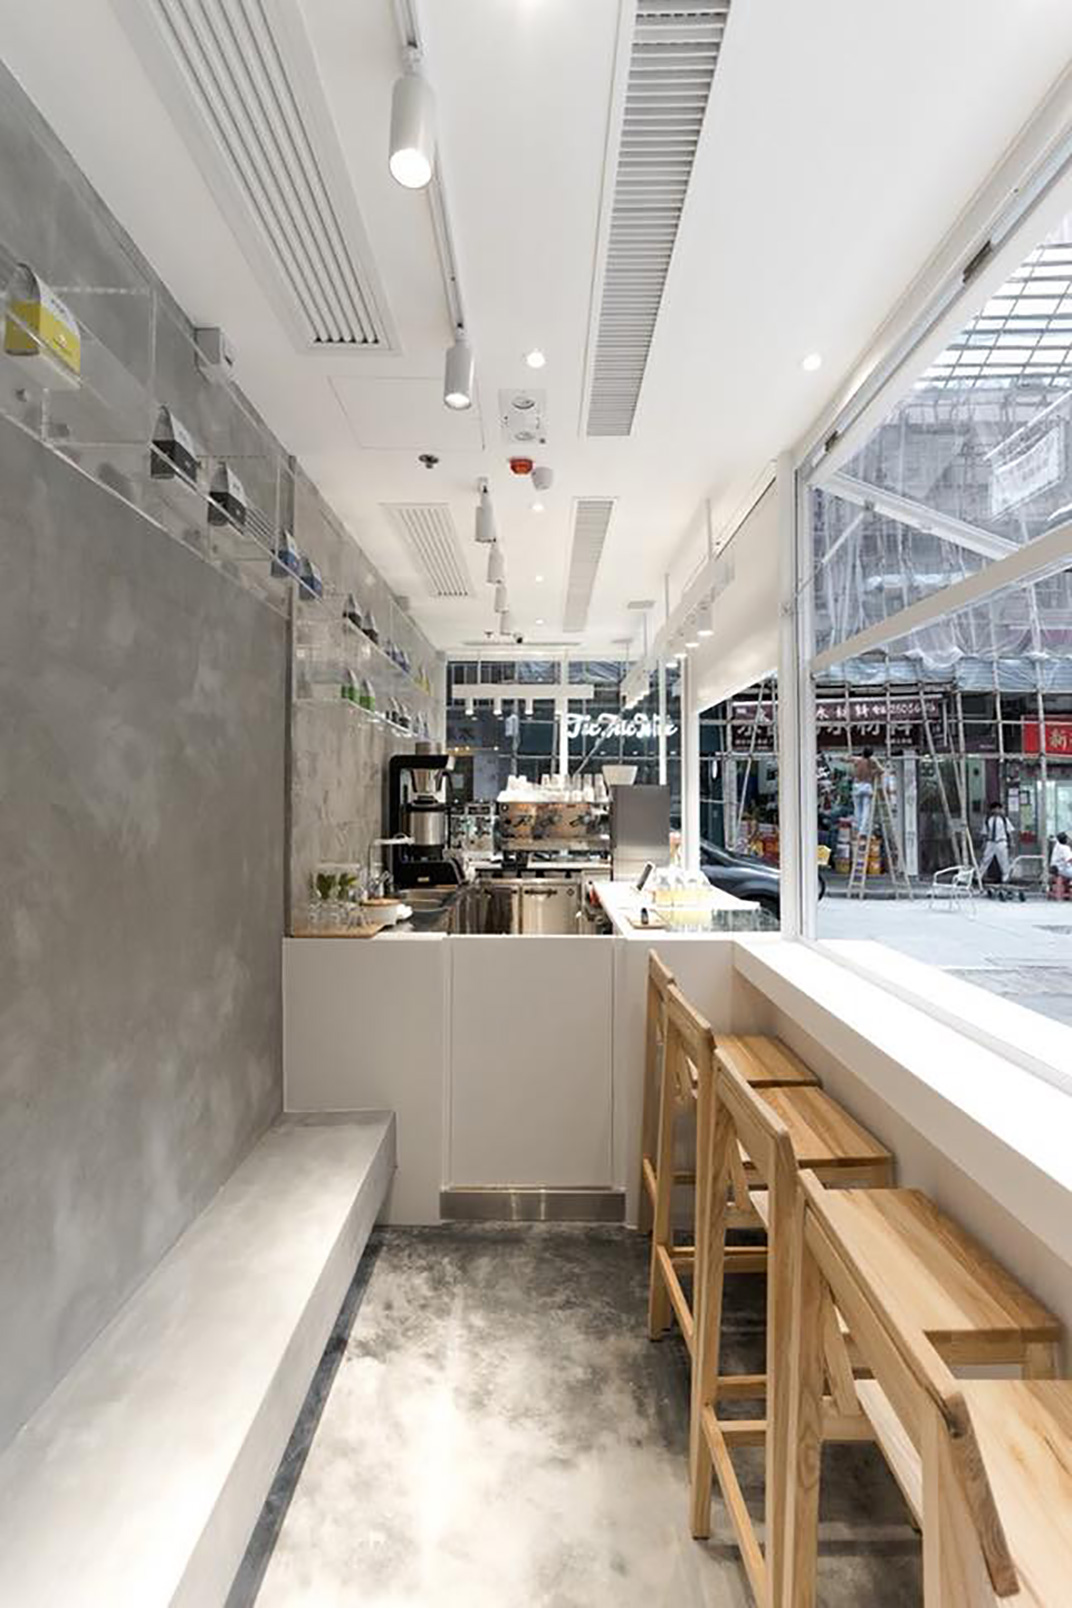 咖啡馆NOC Wanchai West 香港 上海 咖啡馆 白色 袖珍店 logo设计 vi设计 空间设计